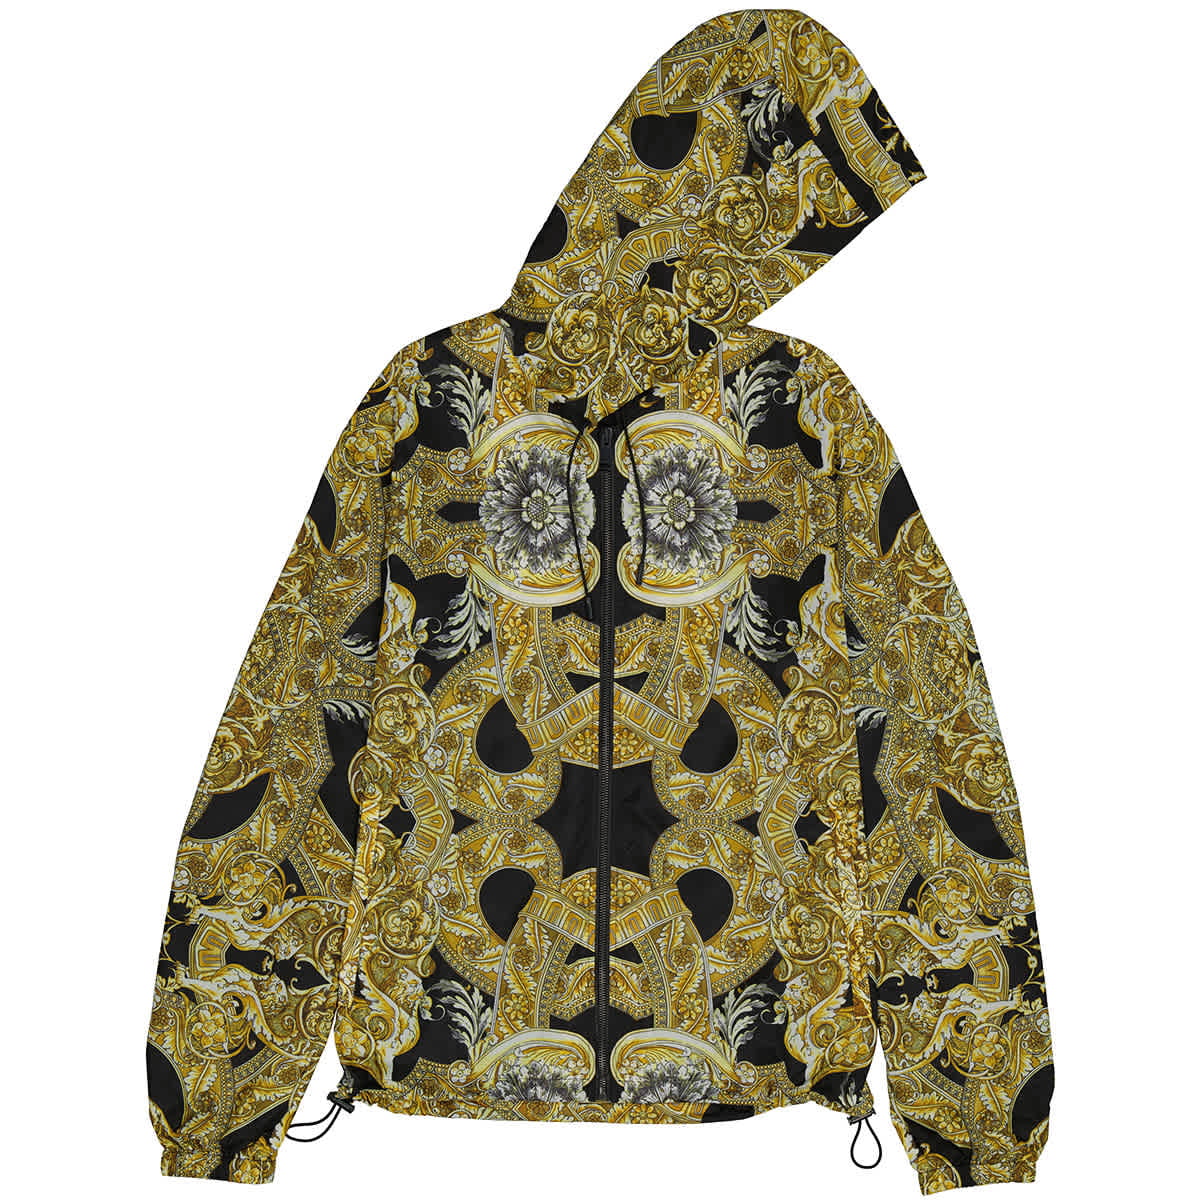 Het eens zijn met Bloemlezing Stadion Versace Men's Baroque Print Nylon Jacket, Brand Size 50 (US Size 40) -  Walmart.com